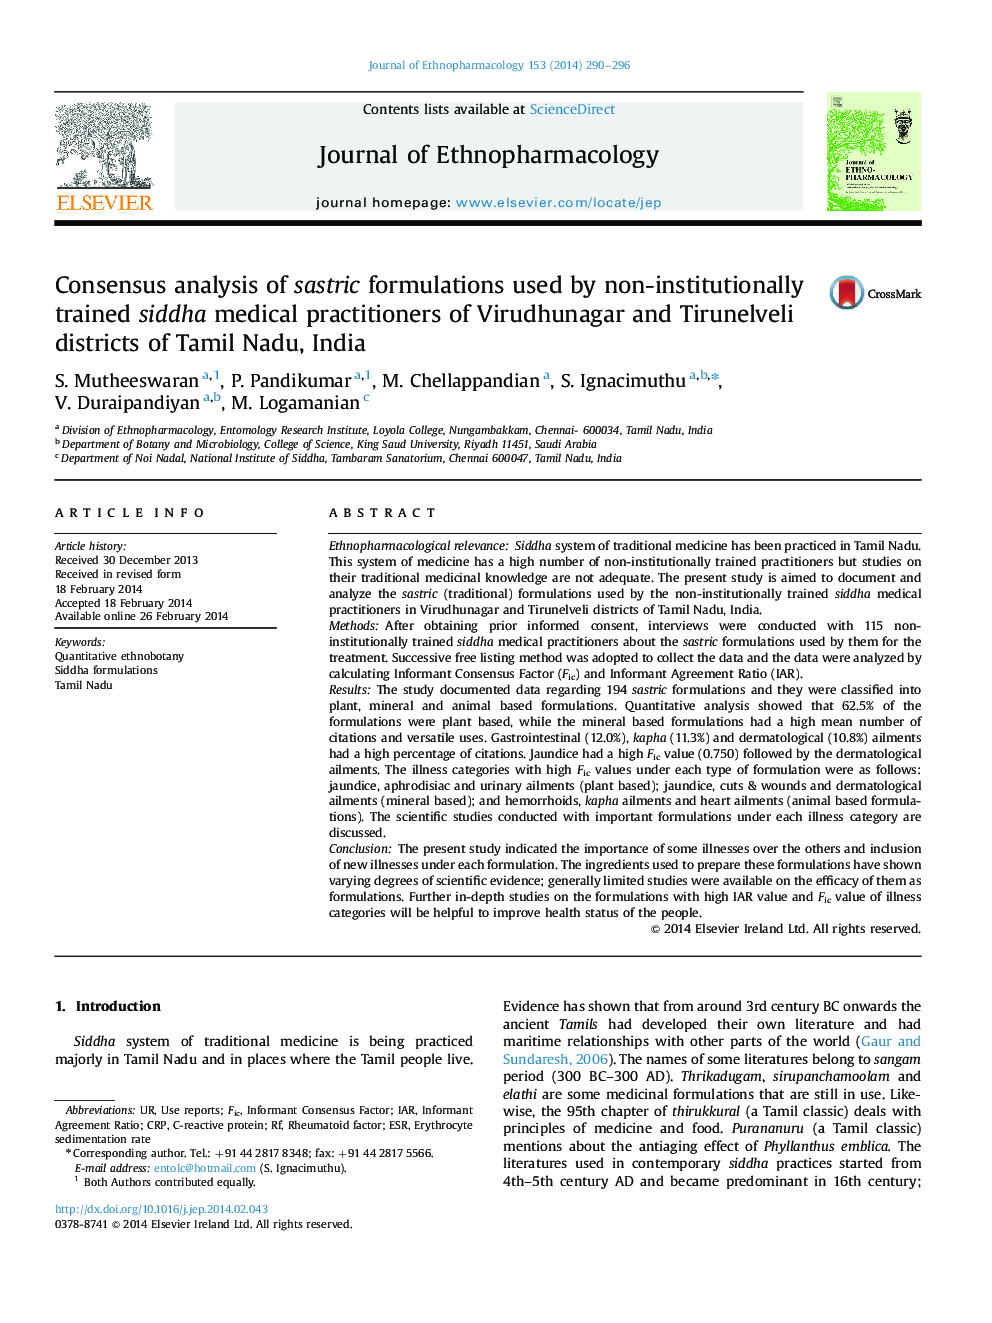 تجزیه و تحلیل اجباری فرمولاسیون های غیرمستقیم که توسط پزشکان سیددا آموزش دیده در خارج از مناطق ویرودونگار و تیرینوللوی تامیل نادو هند انجام شده است 